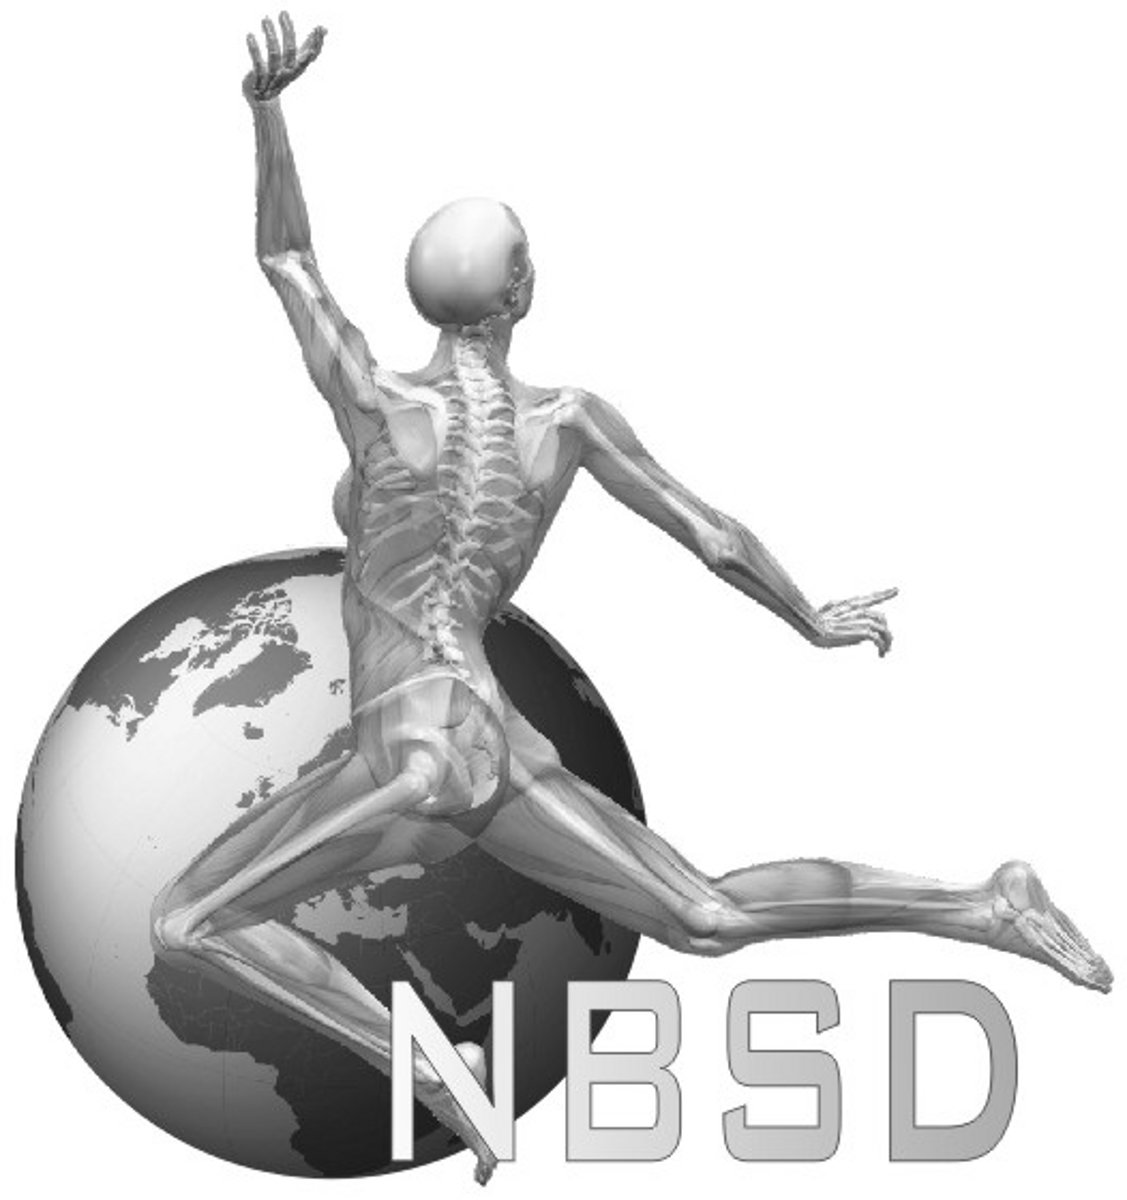 NBSD